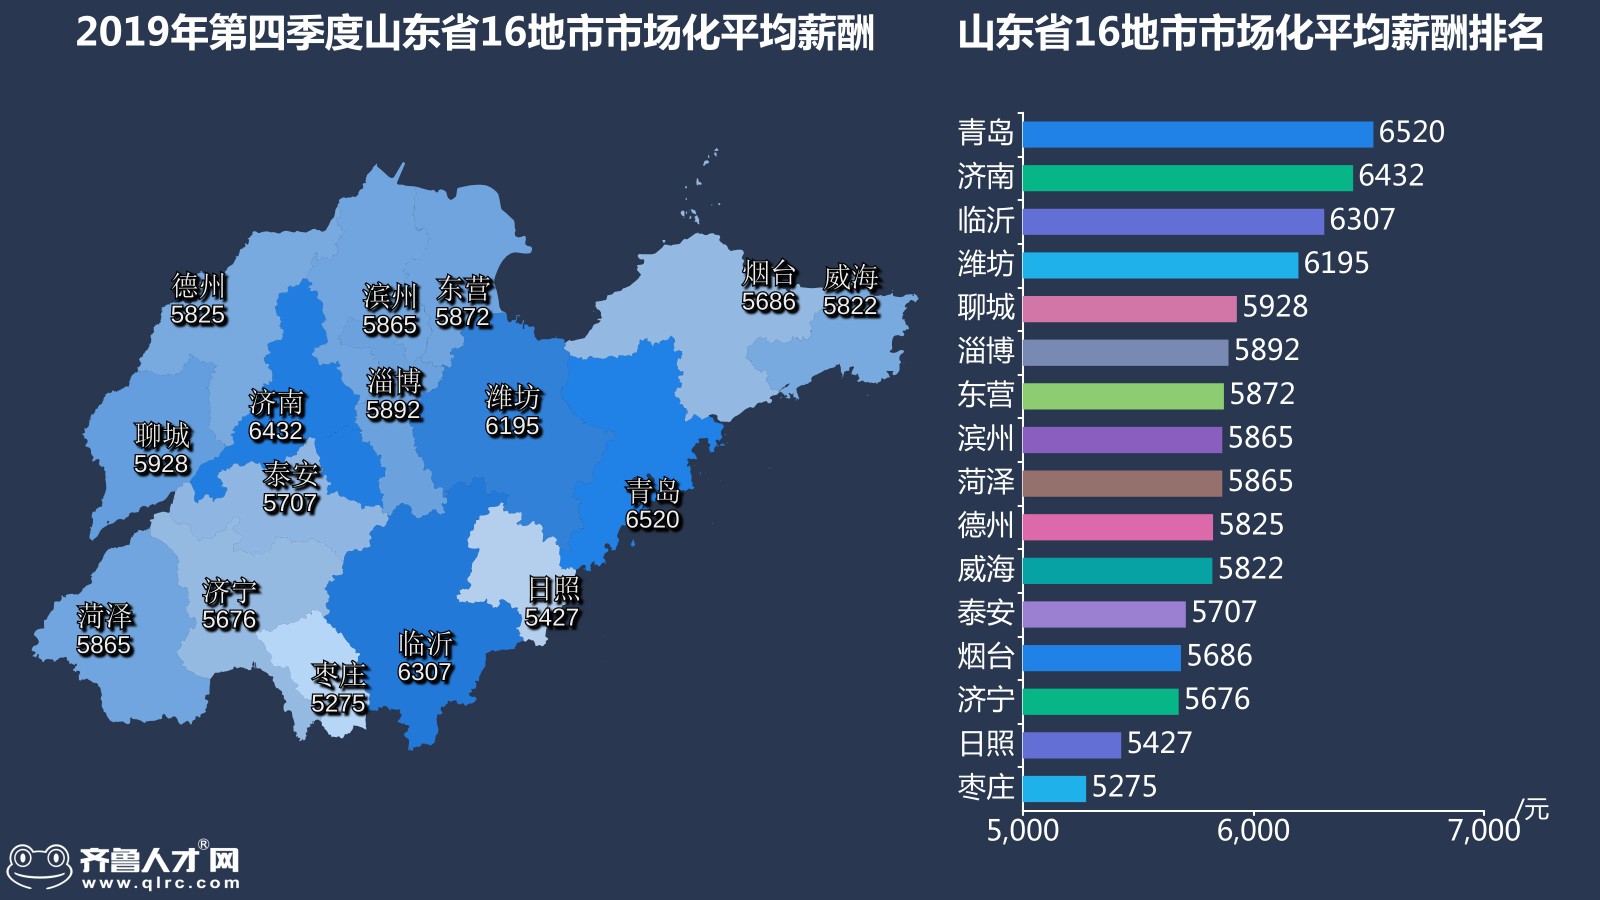 齐鲁人才网-2019年山东四季度薪酬数据图4.jpg